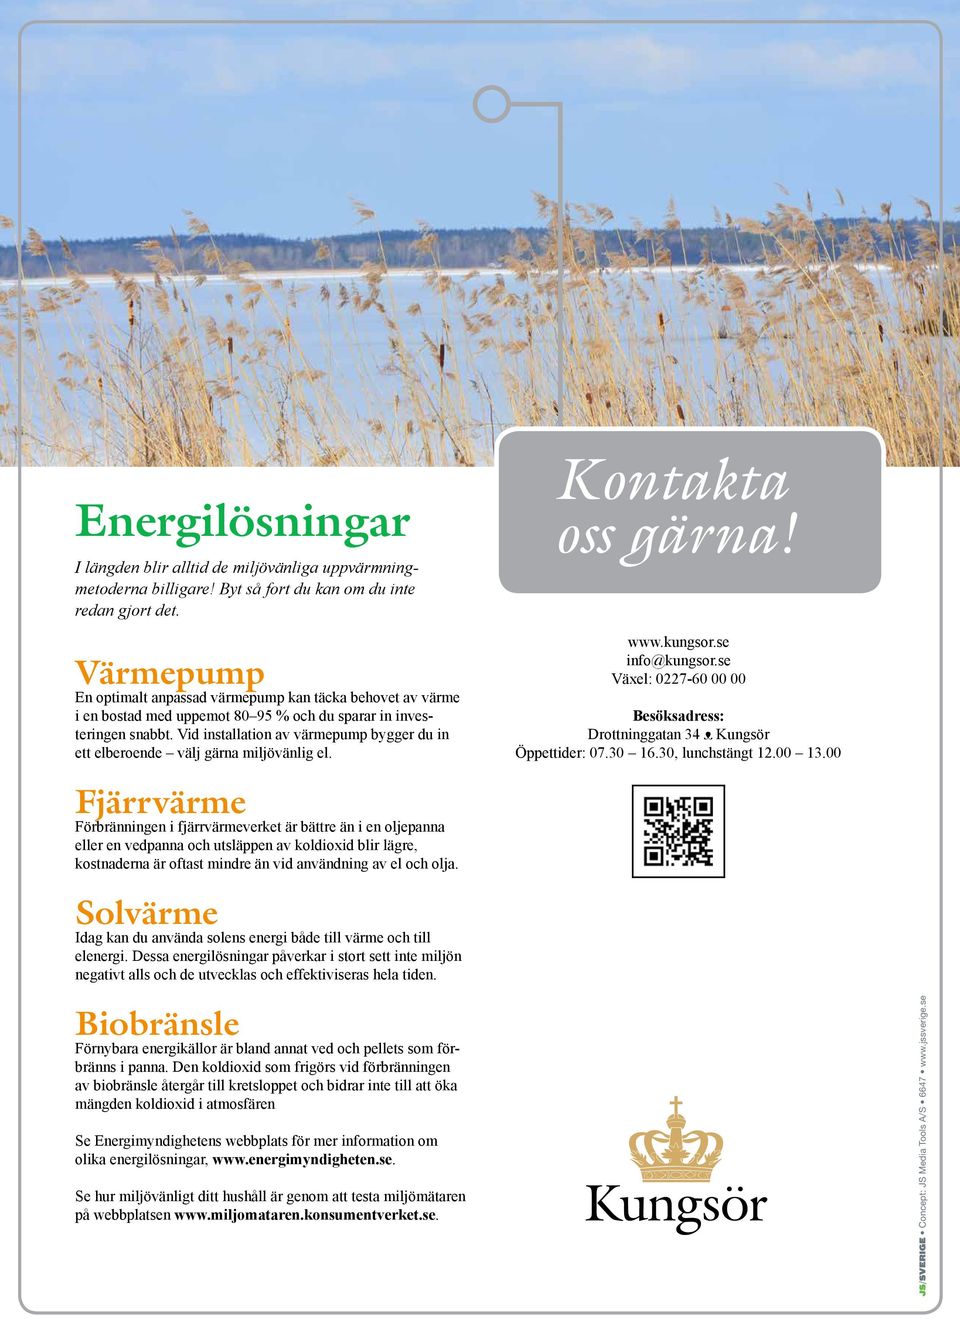 Vid installation av värmepump bygger du in ett elberoende välj gärna miljövänlig el. Kontakta oss gärna! www.kungsor.se info@kungsor.